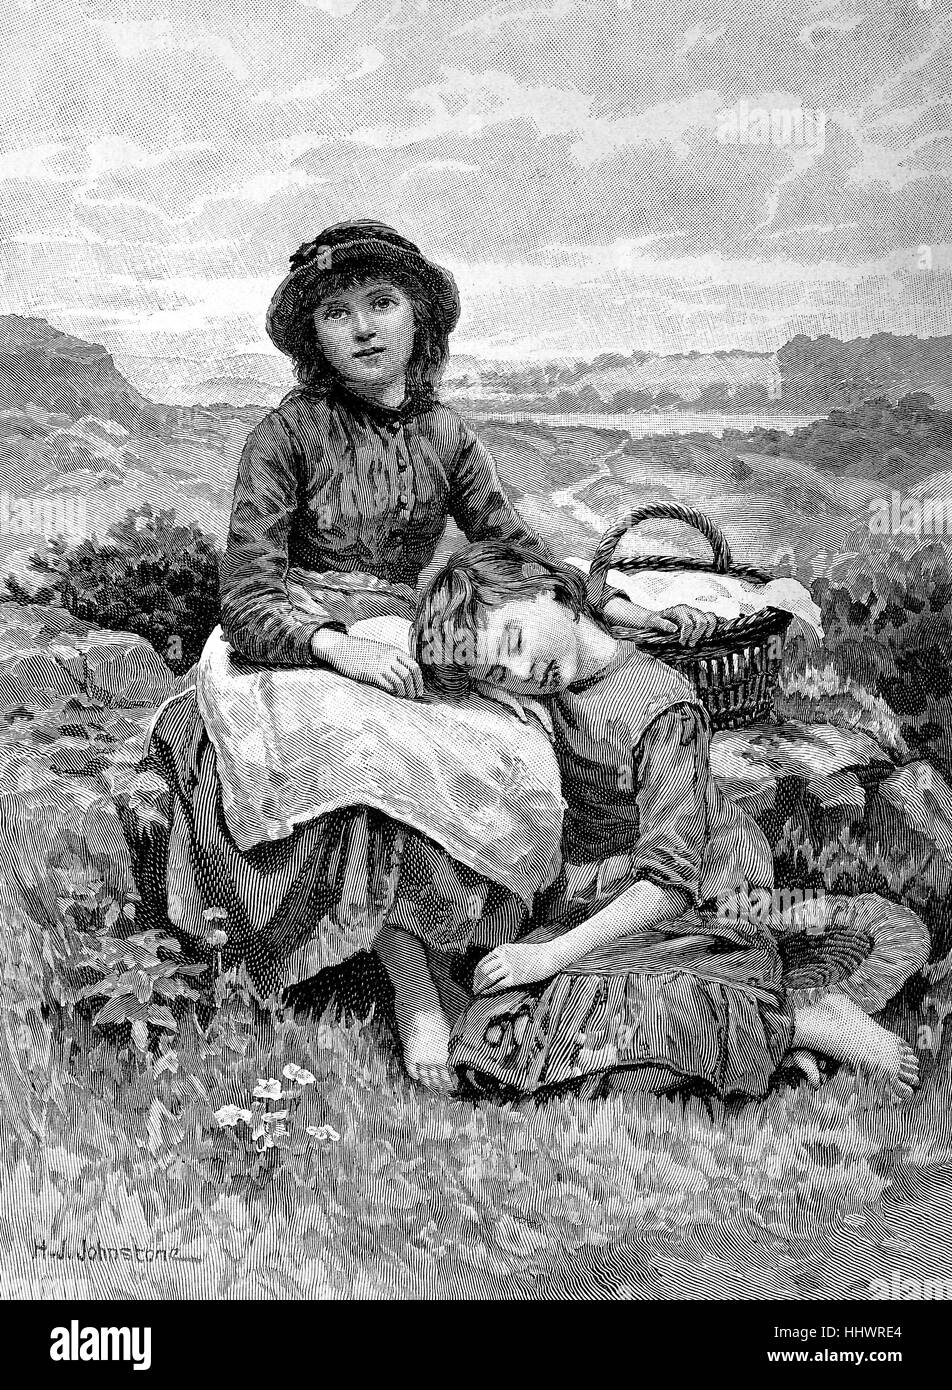 Resto sulla montagna, due ragazze in appoggio, sono stanchi di esecuzione, Germania, immagine storica o illustrazione, pubblicato 1890, digitale migliorata Foto Stock